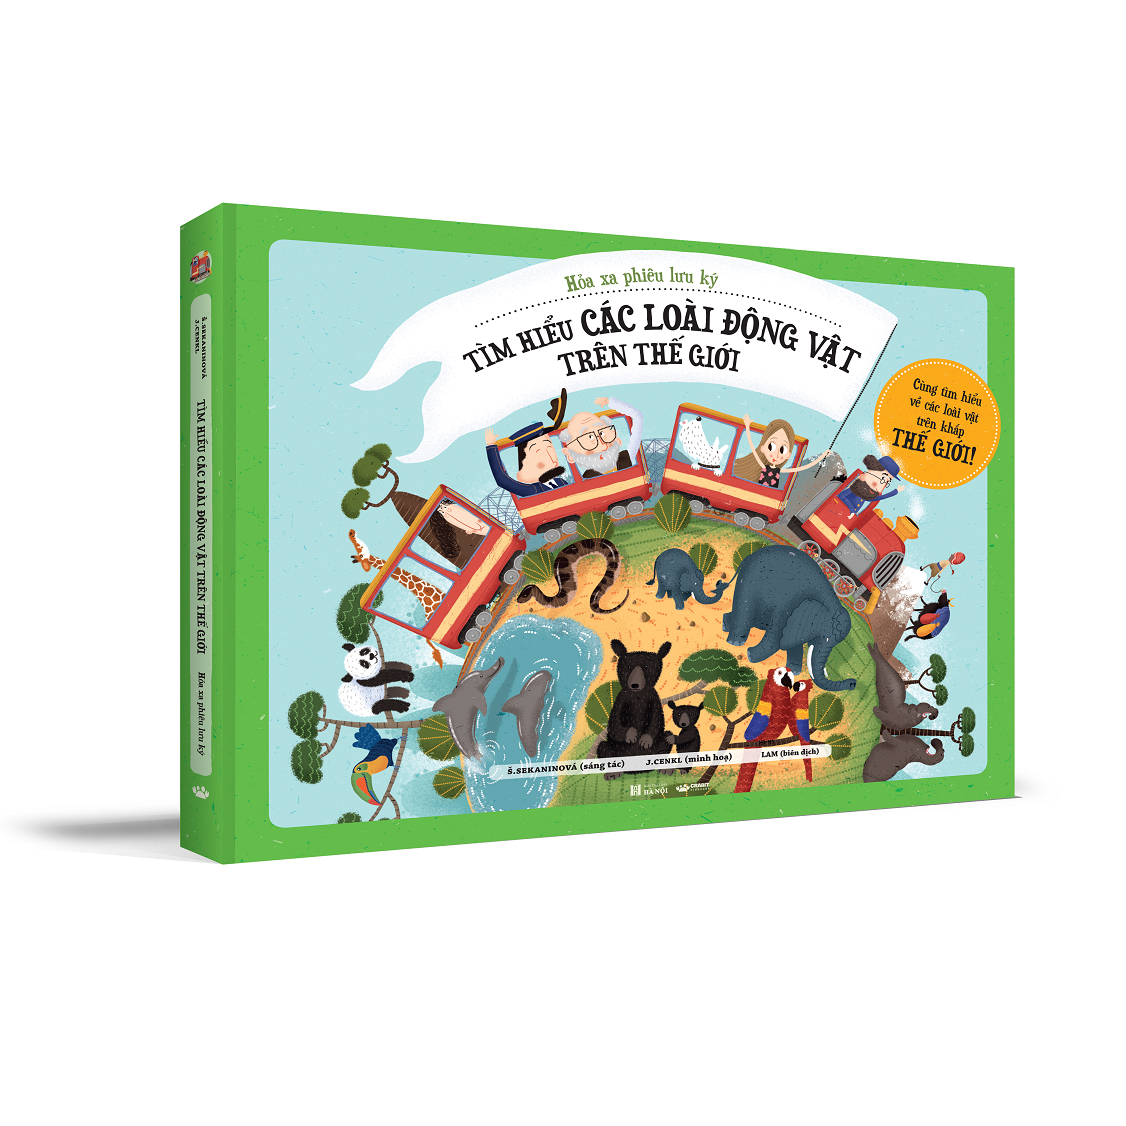 Sách - Hỏa xa phiêu lưu ký - Crabit Kidbooks - dành cho trẻ 5